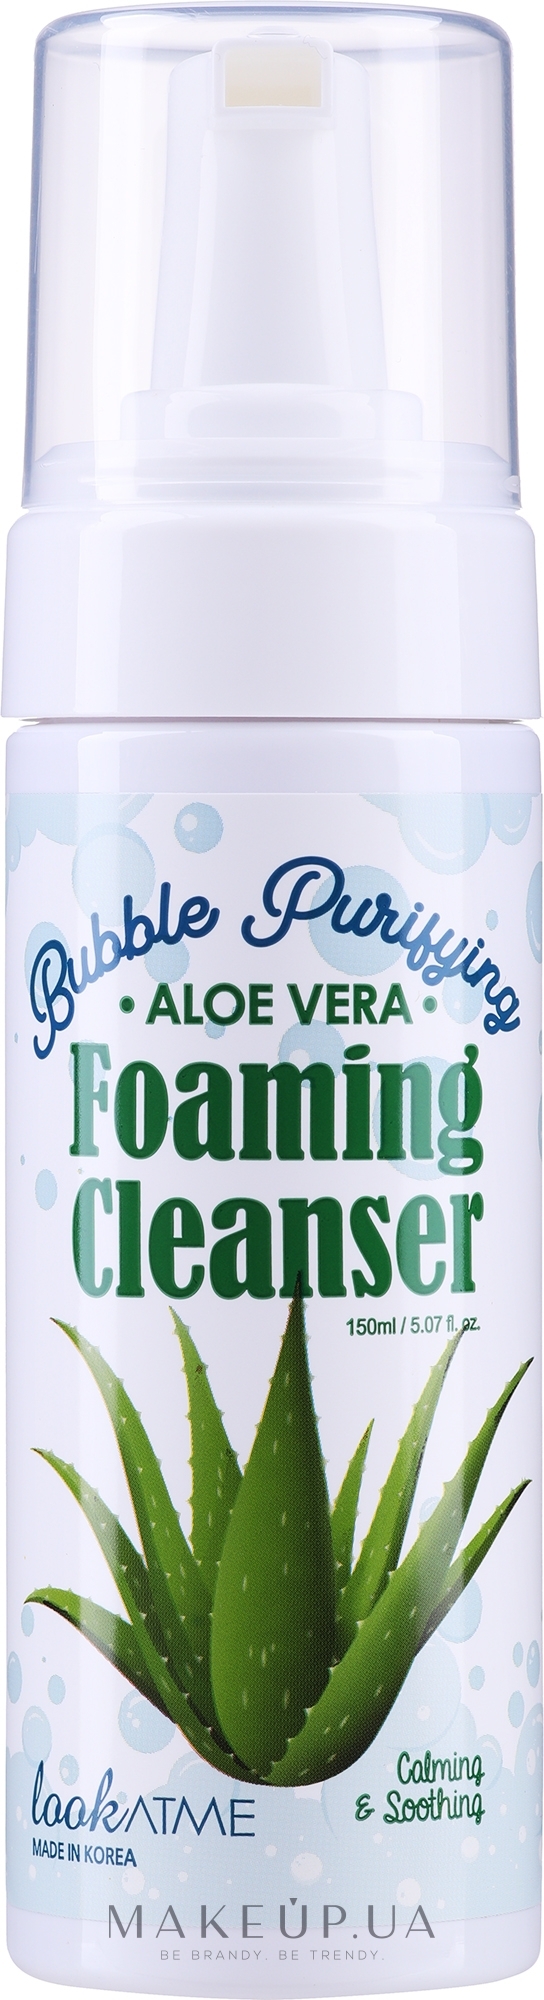 Пенка для лица очищающая с экстрактом алоэ вера - Look At Me Bubble Purifying Foaming Facial Cleanser Aloe Vera — фото 150ml